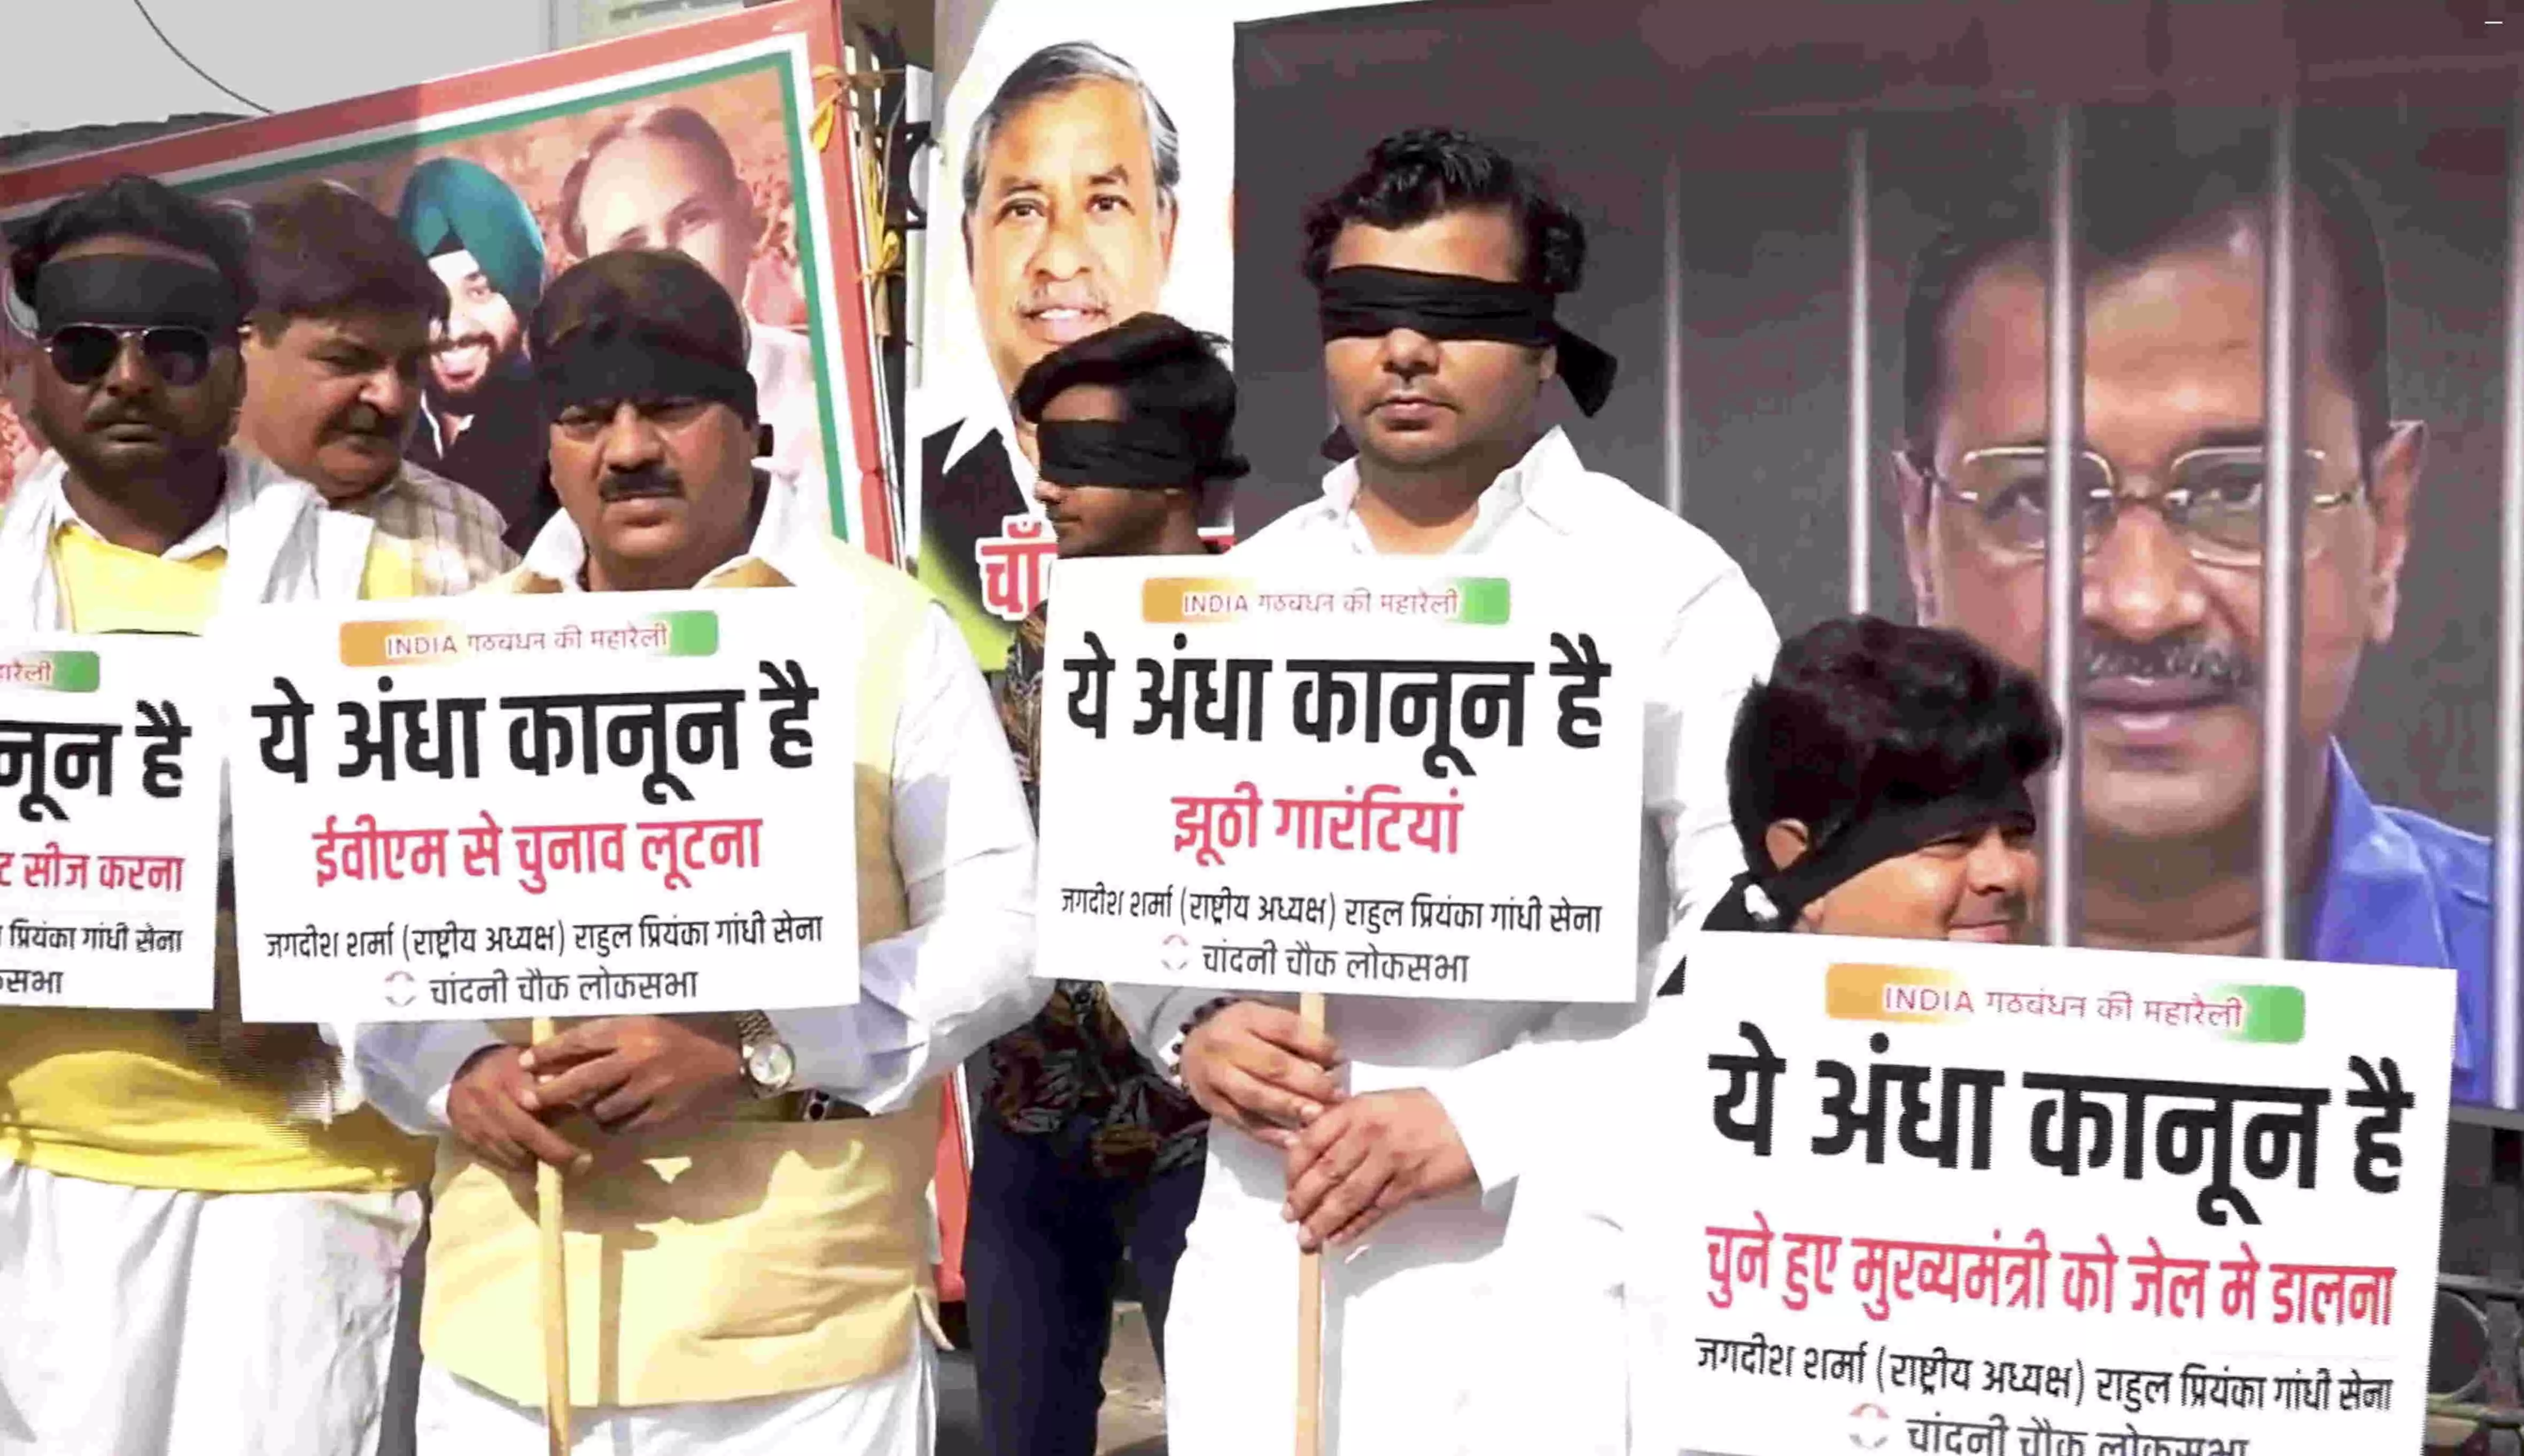 Mother India in pain, tyranny wont work: Sunita Kejriwal at INDIA bloc rally